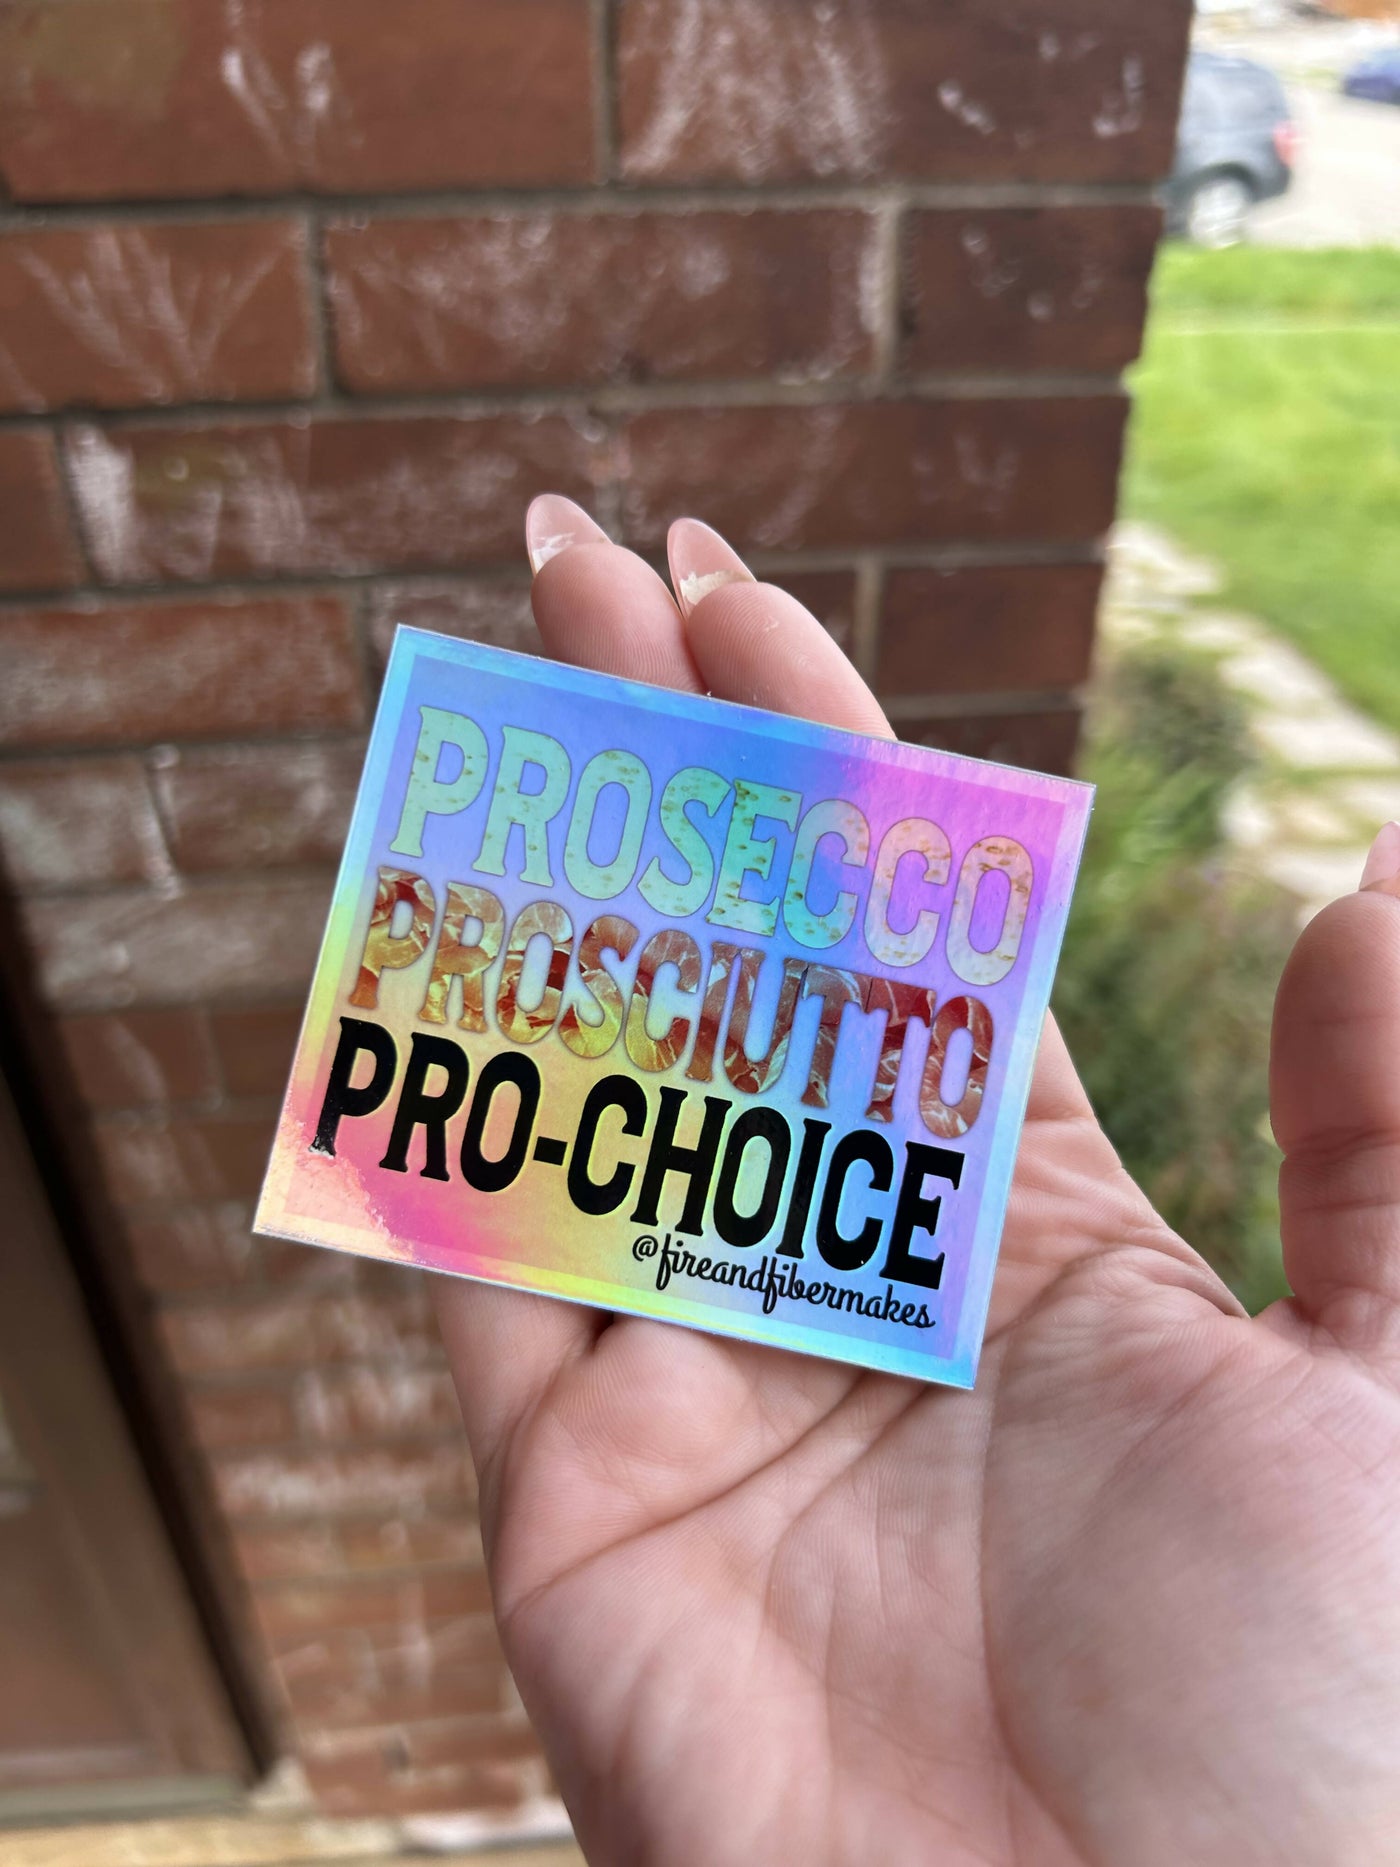 Prosecco Proscuito Pro-Choice Holographic Sticker